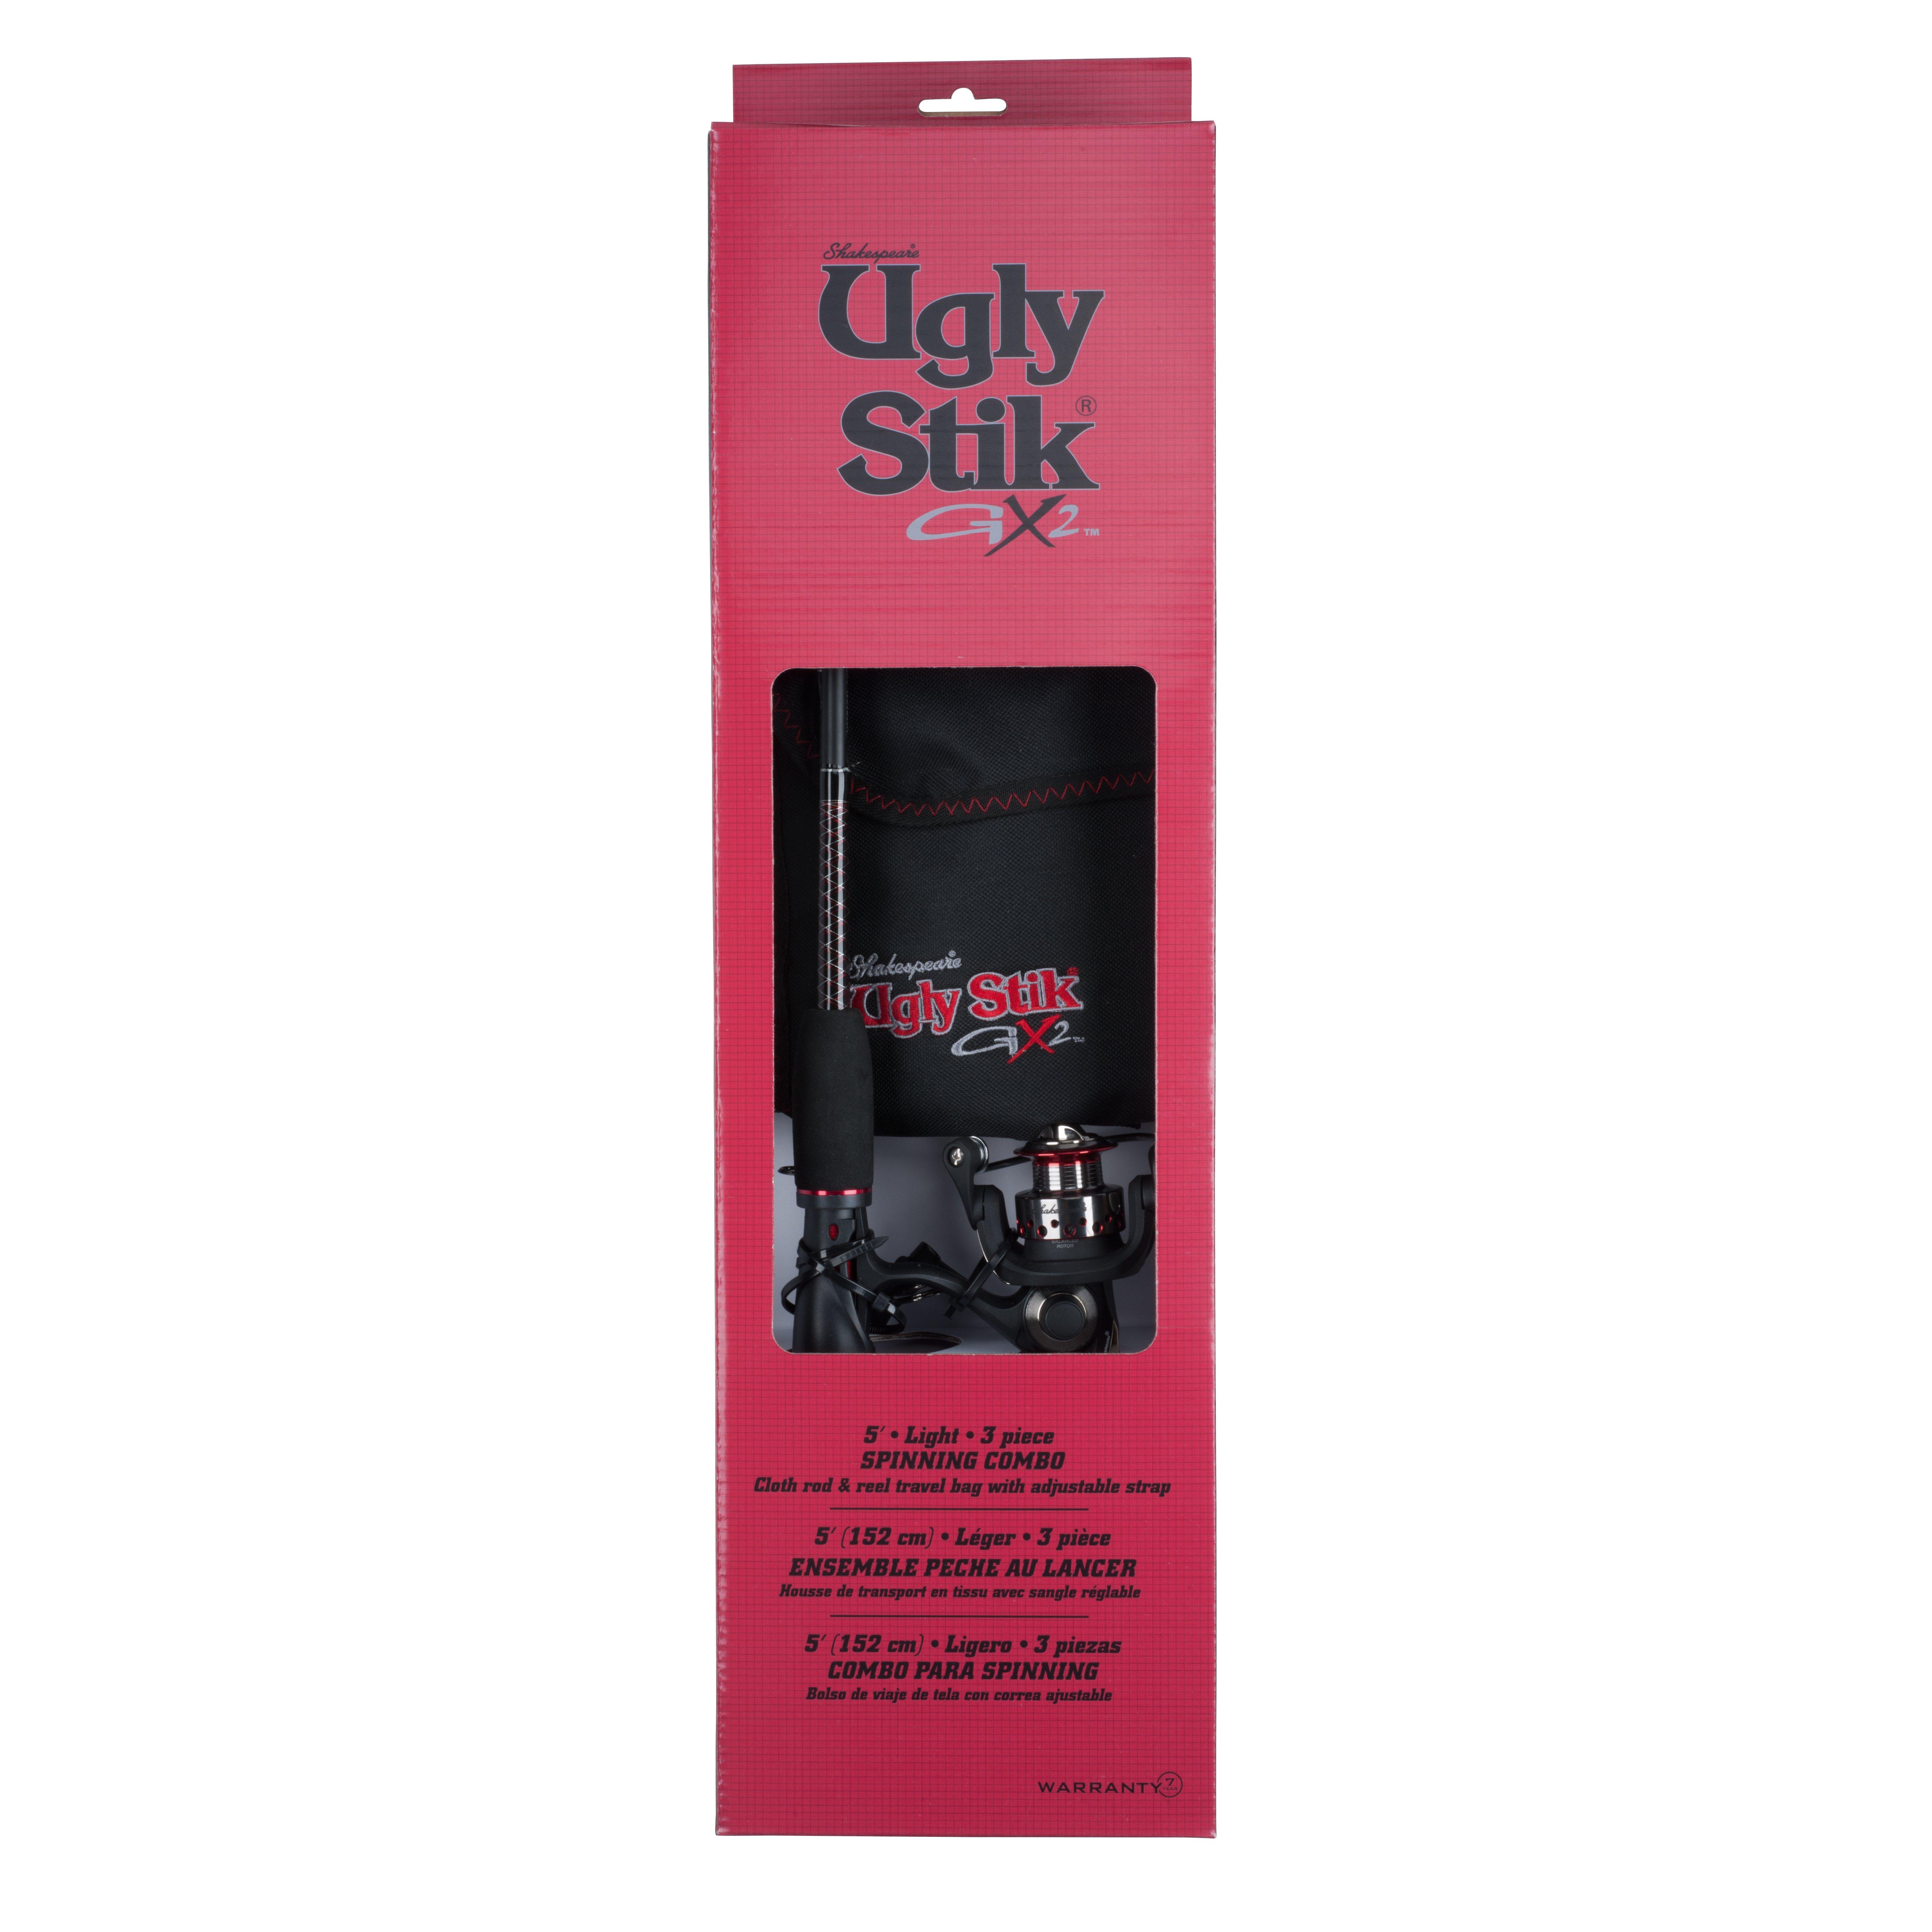 Ugly Stik GX2 Travel Rod Review - 4 Piece Rod 